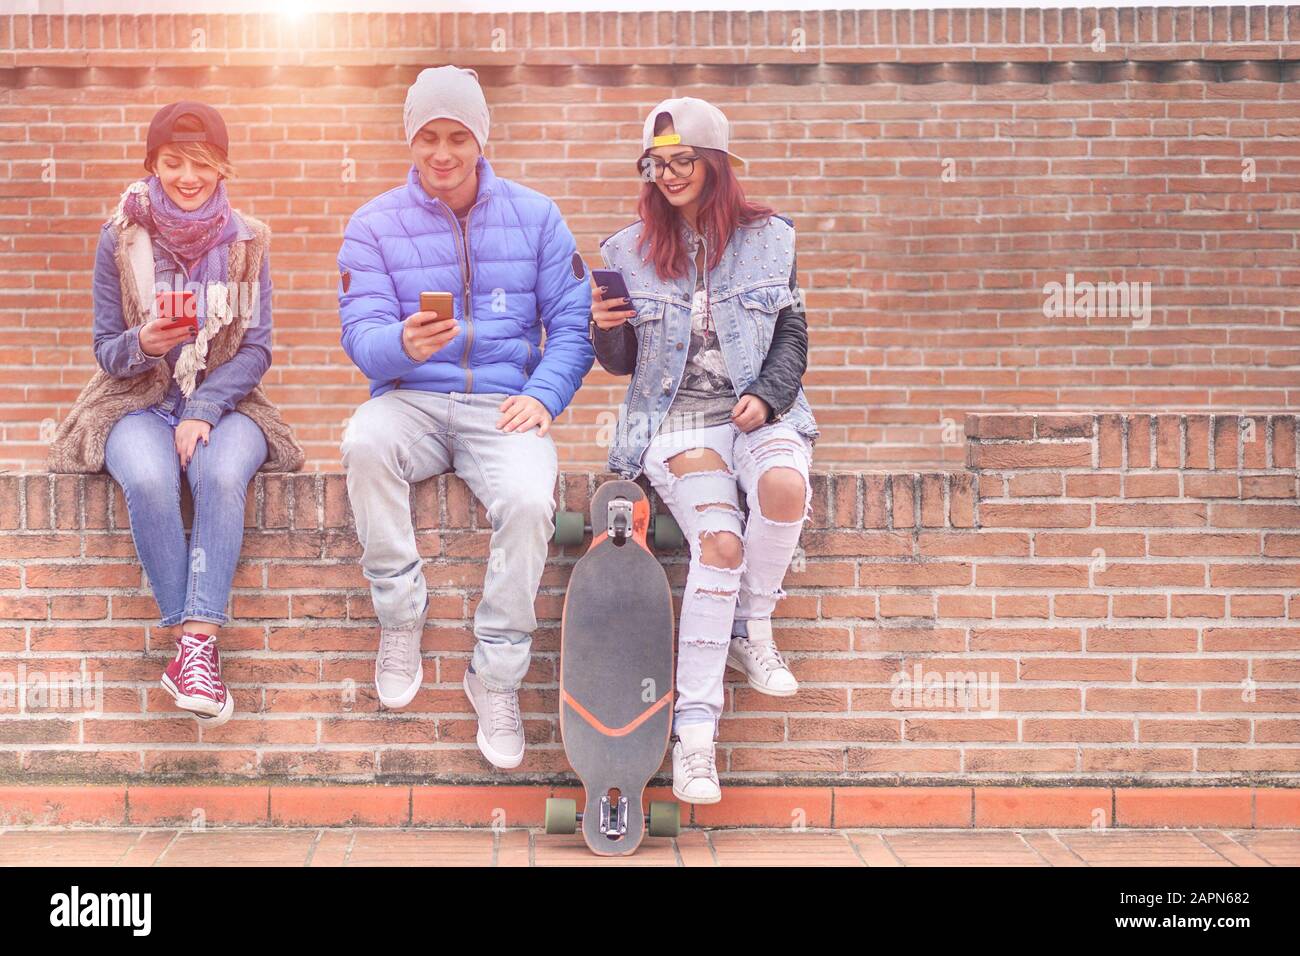 Gruppe junger Freunde, die online mit Smartphones im Freien spielen - Fröhliche Trend-Leute sind abhängig vom mobilen - Technologie- und Modekonzept in der Stadt Stockfoto